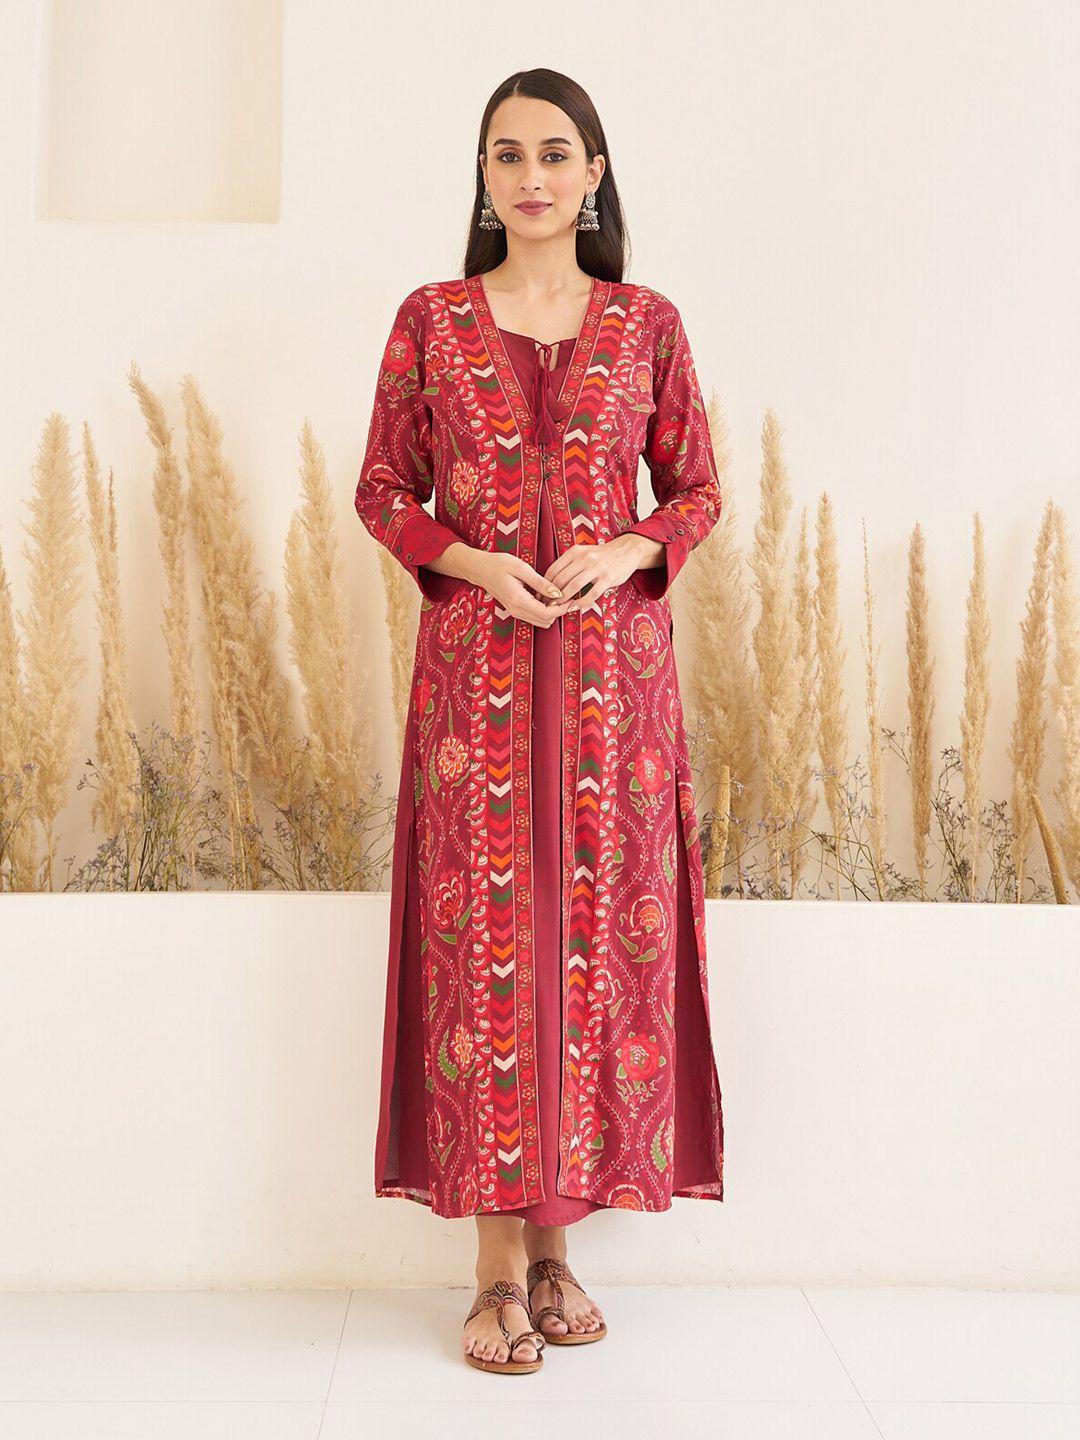 rustorange side slit a-line maxi dress with floral printed long shrug